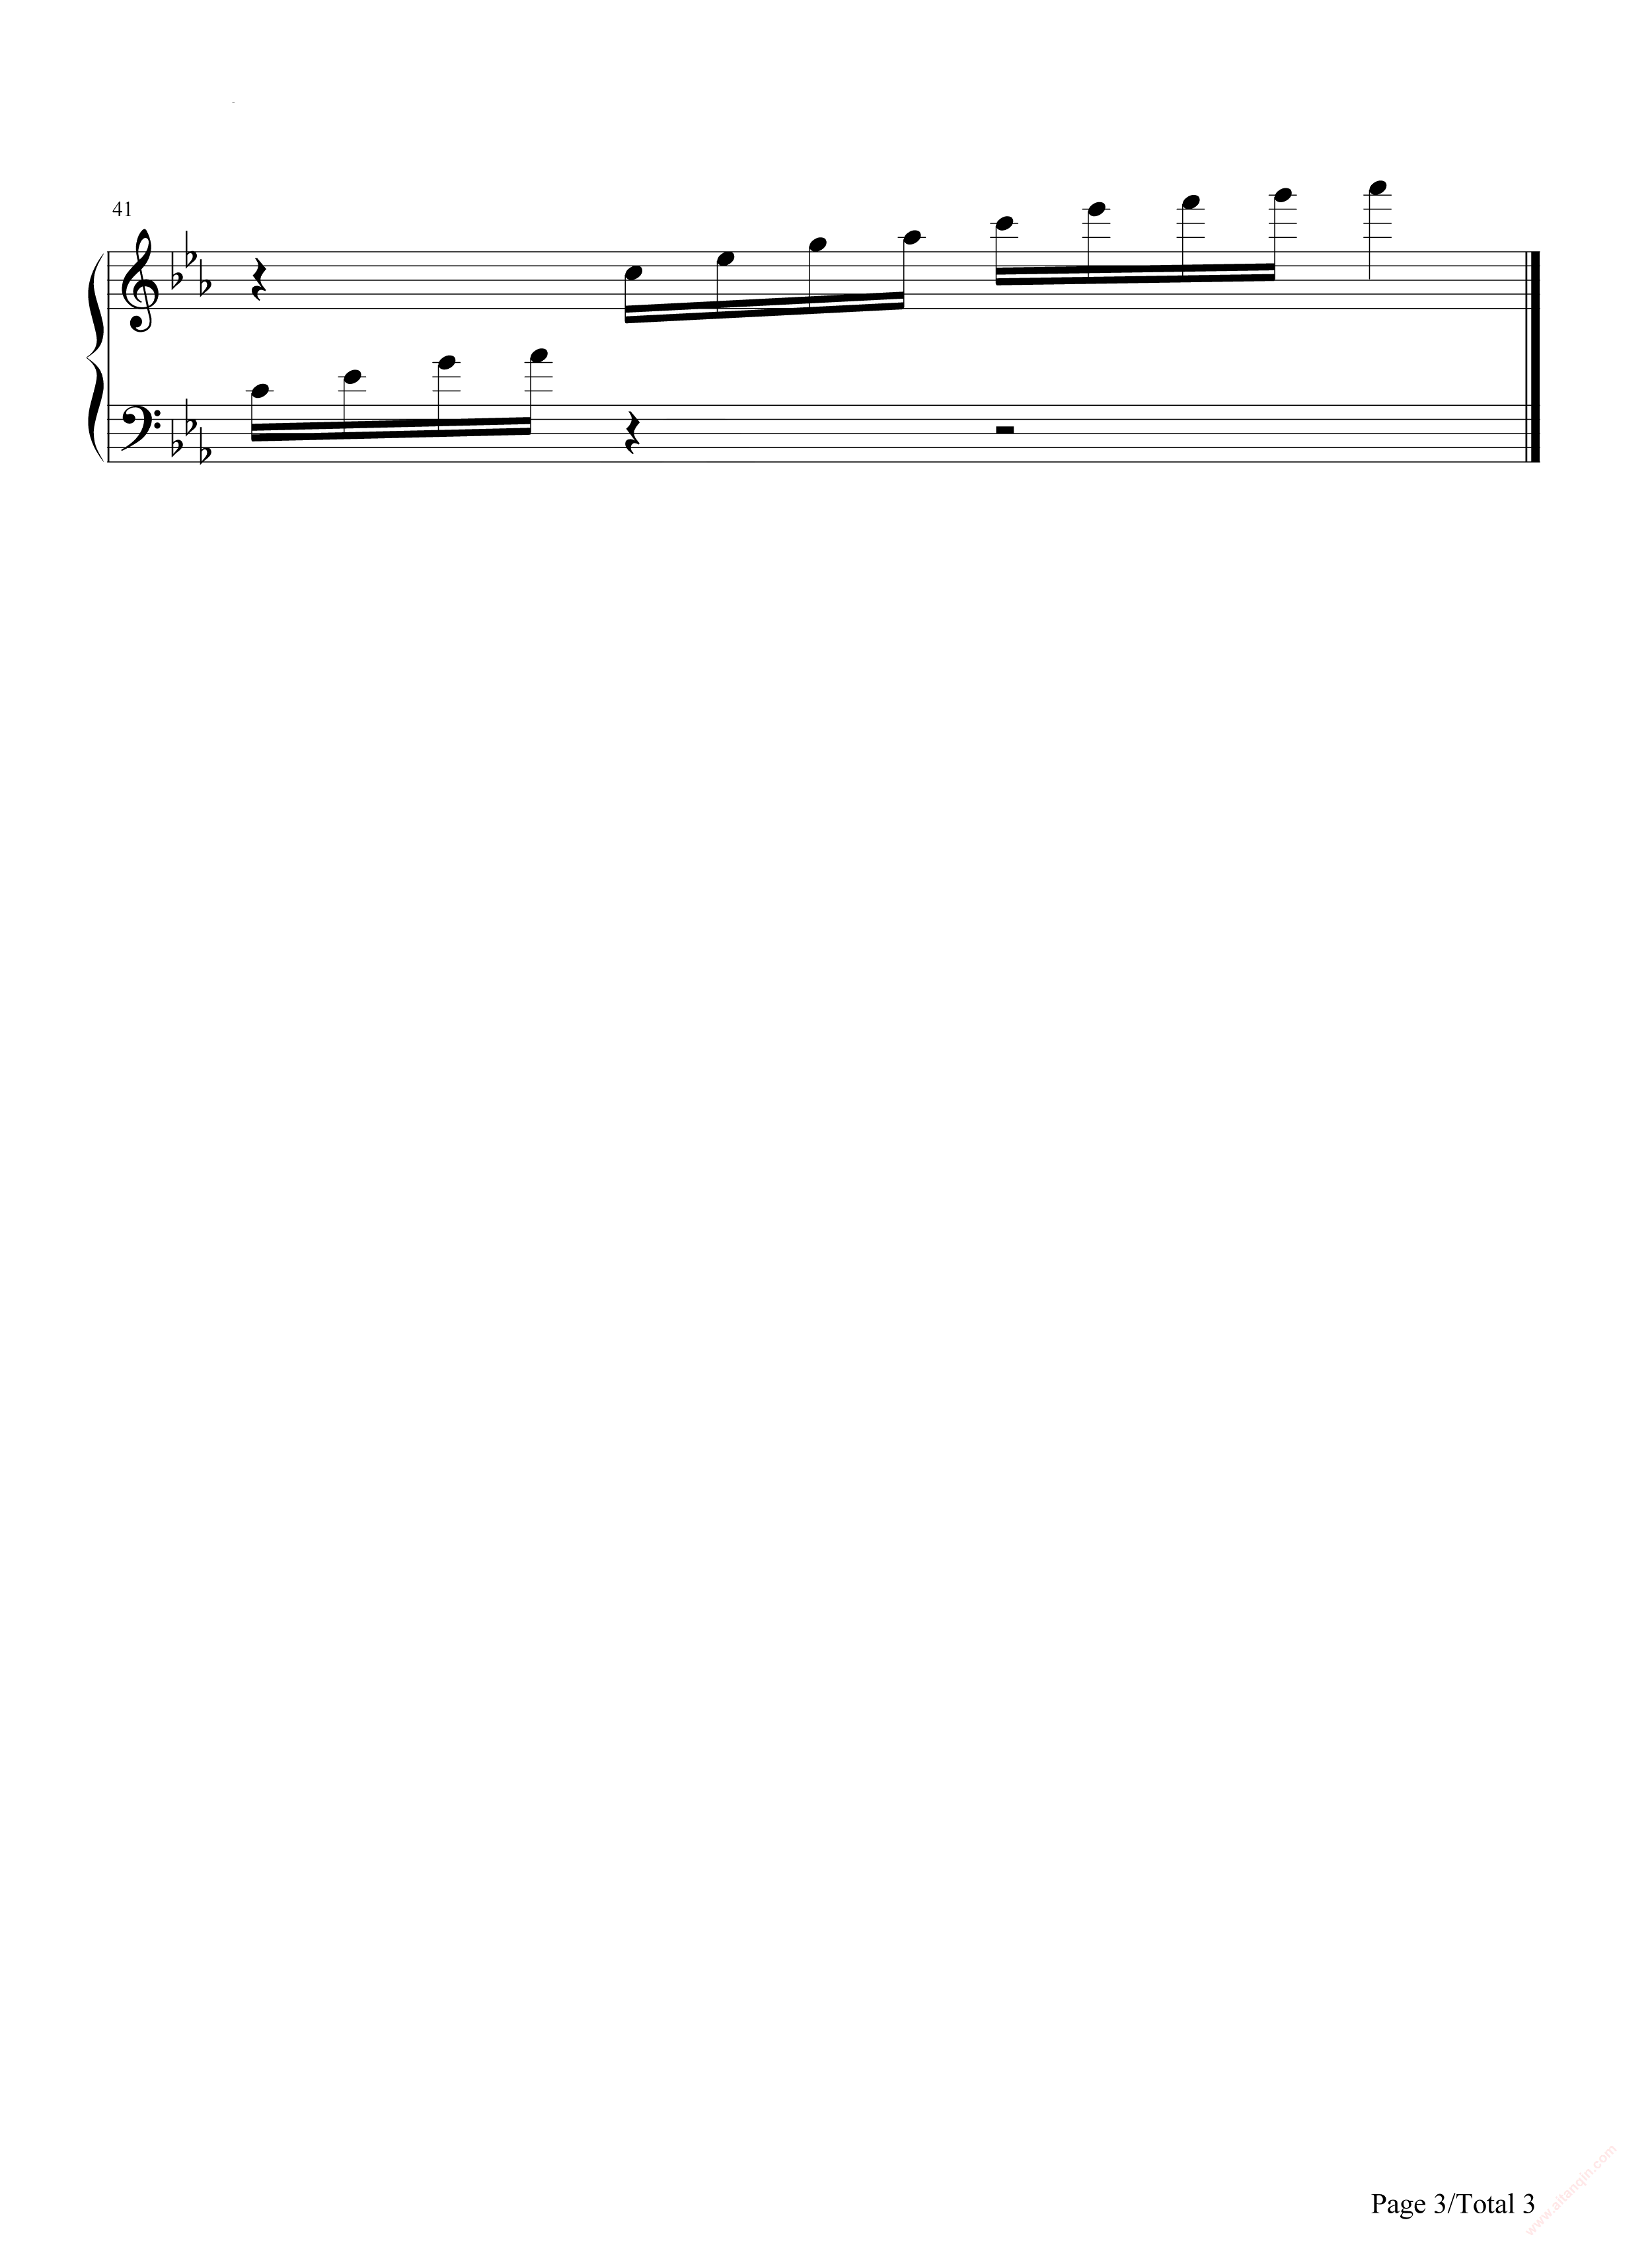 不完美女孩-不完美也是一种美双手简谱预览2-钢琴谱文件（五线谱、双手简谱、数字谱、Midi、PDF）免费下载